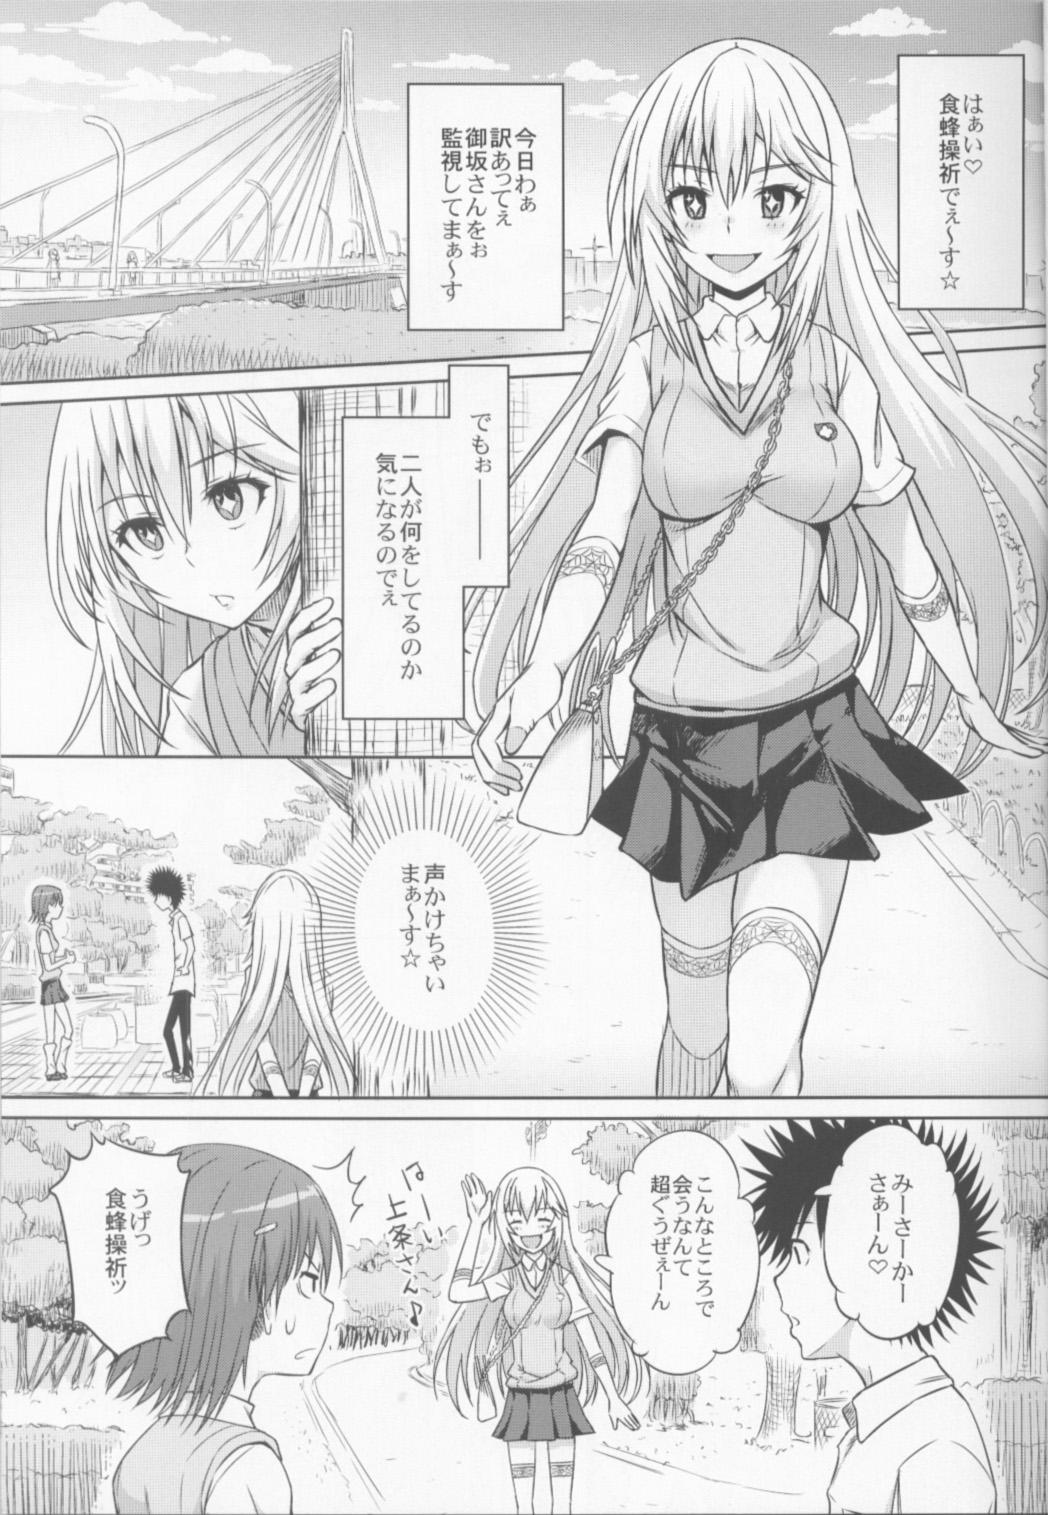 Tiny Tits Remocon ga Nai. - Toaru kagaku no railgun Shesafreak - Page 2